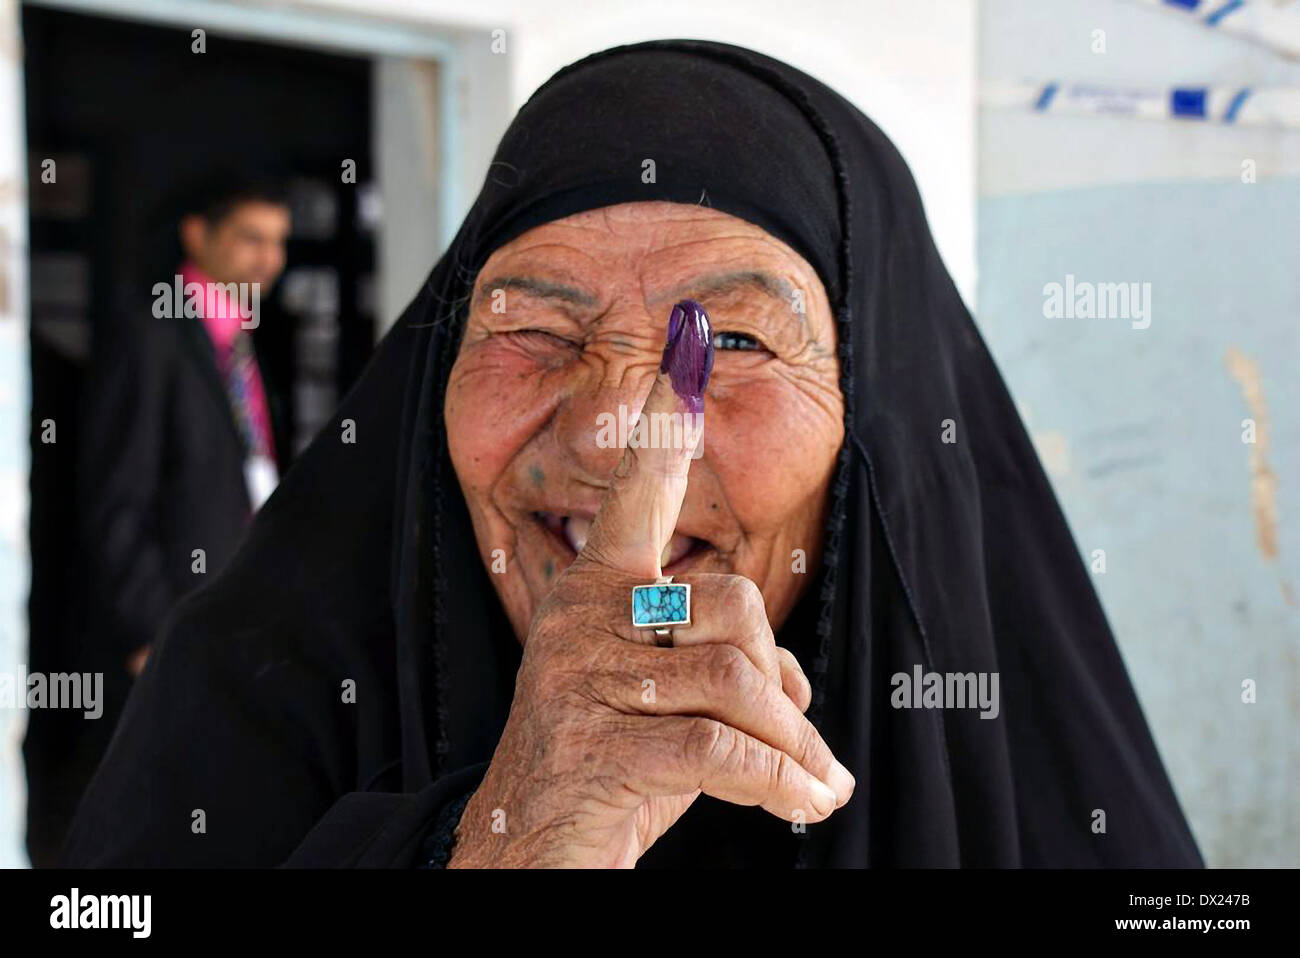 Une femme irakienne tient son doigt pourpre encrée montrant qu'elle a voté aux élections législatives le 7 mars 2010 à n de Nassiriya, Iraq. Banque D'Images